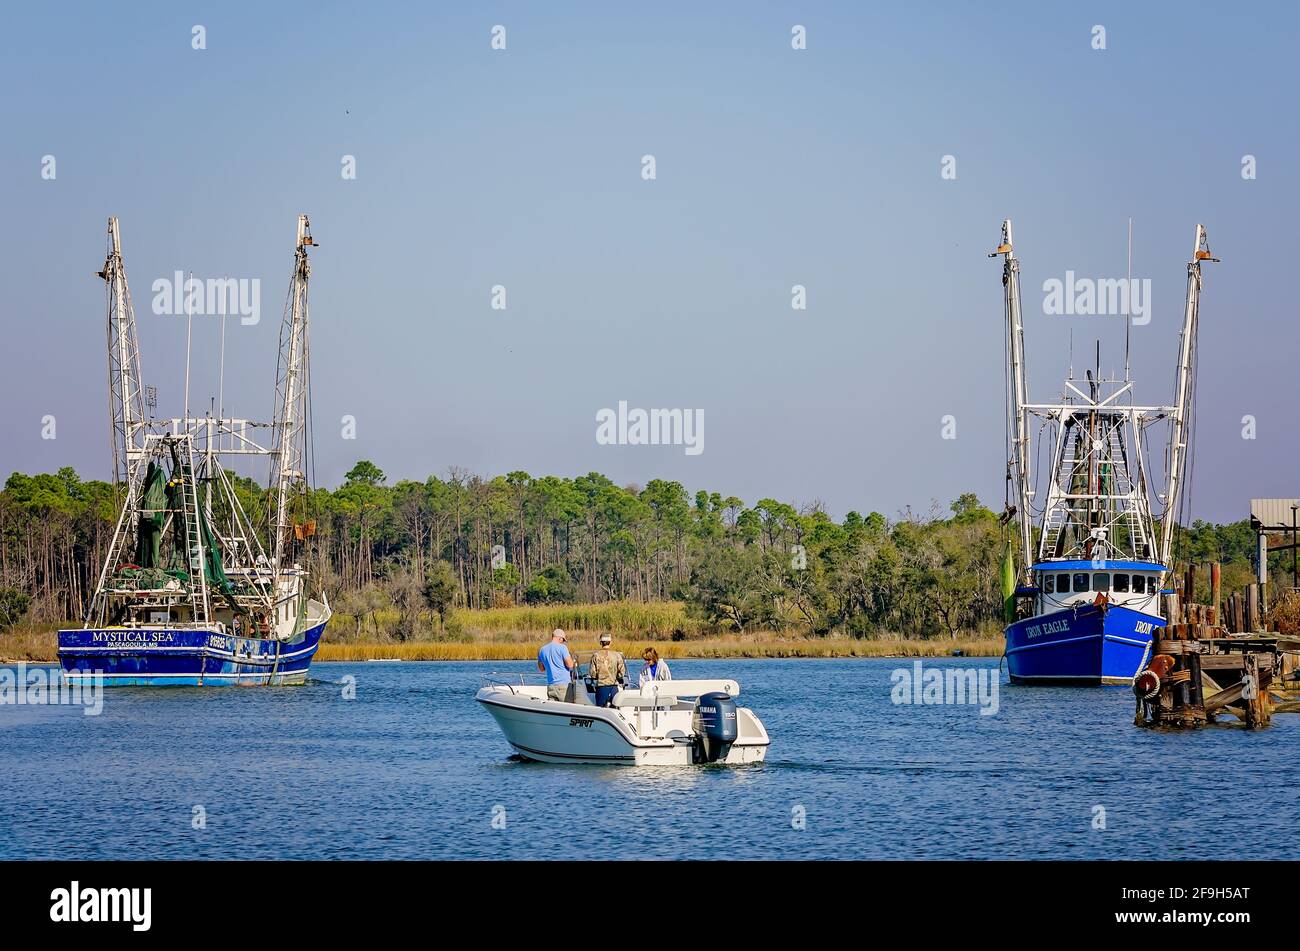 Une famille dans un bateau de pêche passe entre deux bateaux à crevettes, “Mystique Sea” et “Iron Eagle”, 23 novembre 2012, à Bayou la Berre, Alabama. Banque D'Images